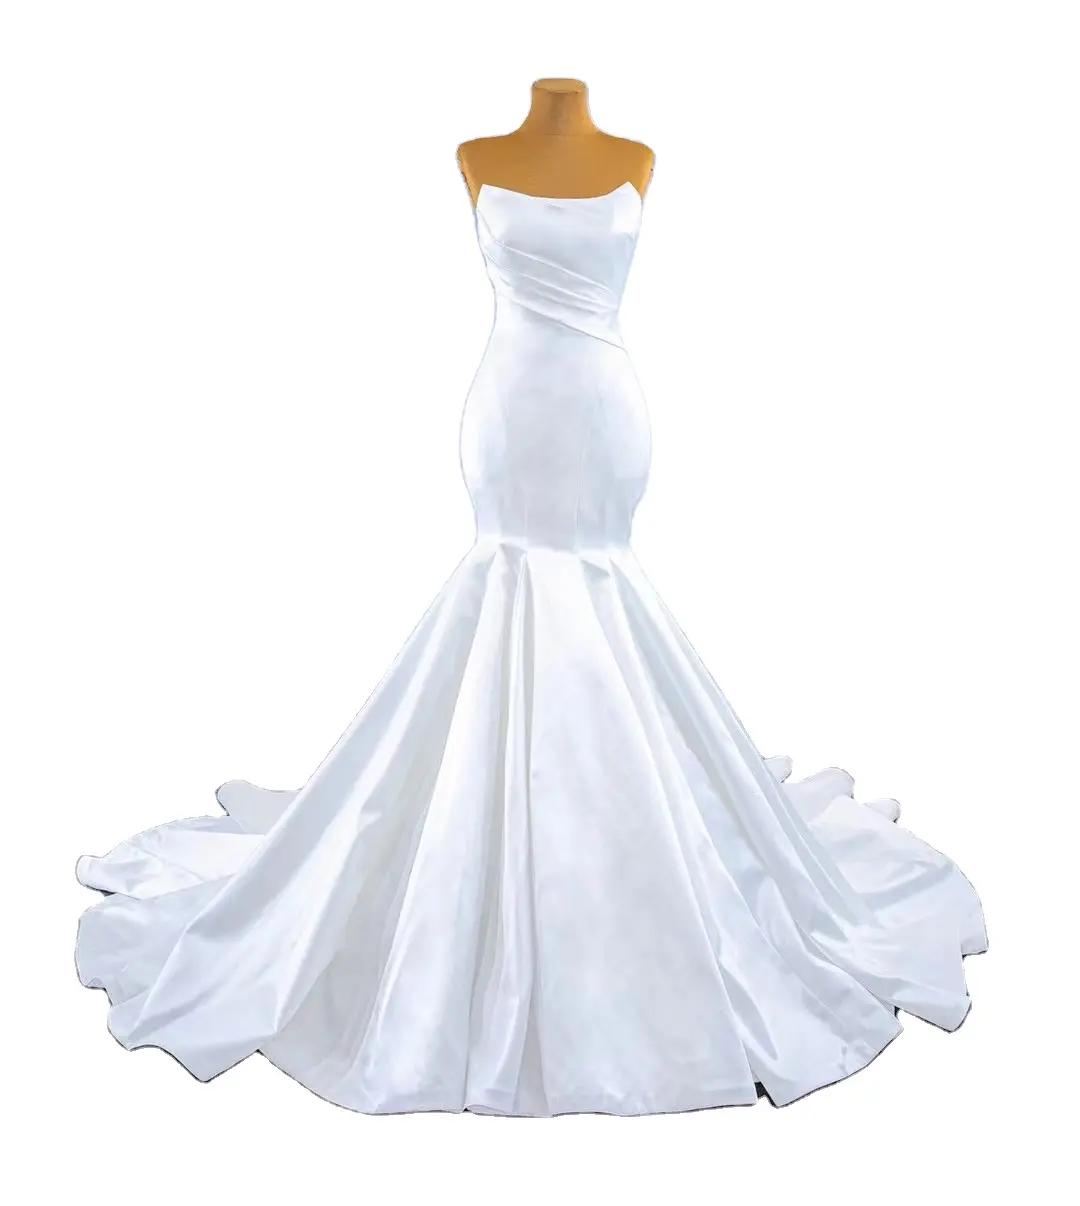 Trắng Bán Buôn Mermaid Bóng Bridal Dress Luxury Mềm Satin Mermaid Wedding Dress Đối Với Phụ Nữ Bóng Gowns